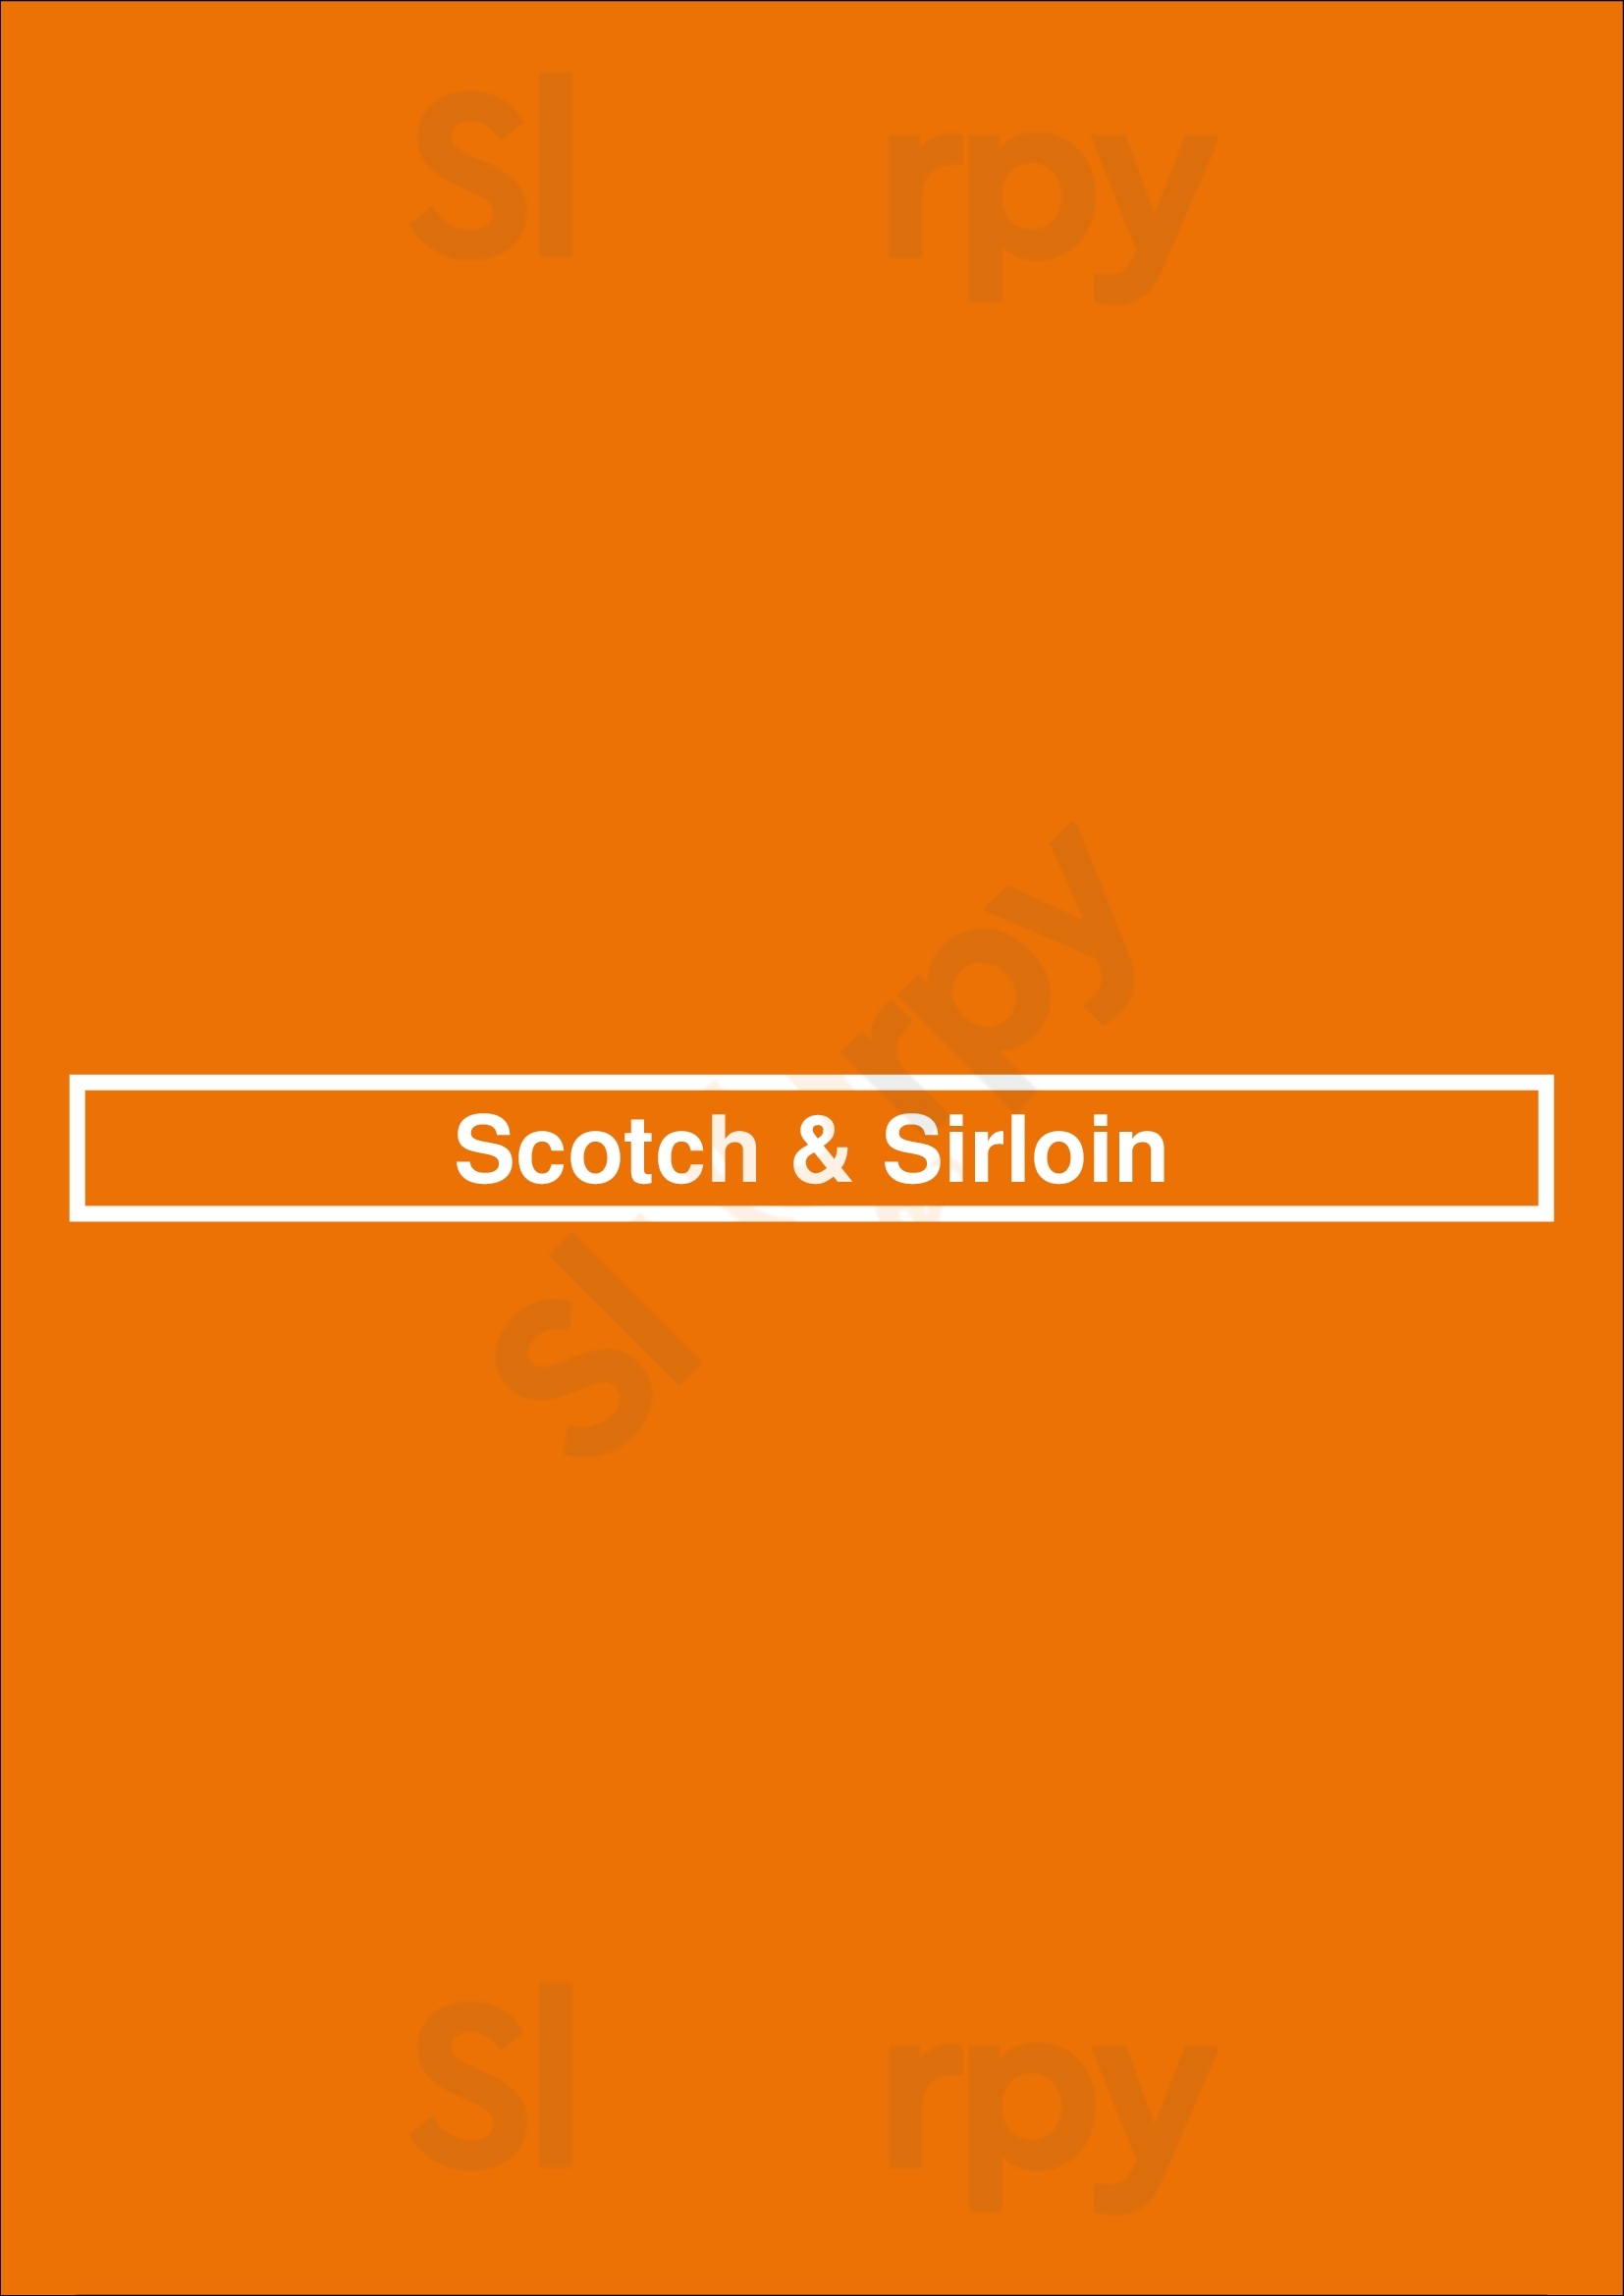 Scotch & Sirloin Wichita Menu - 1